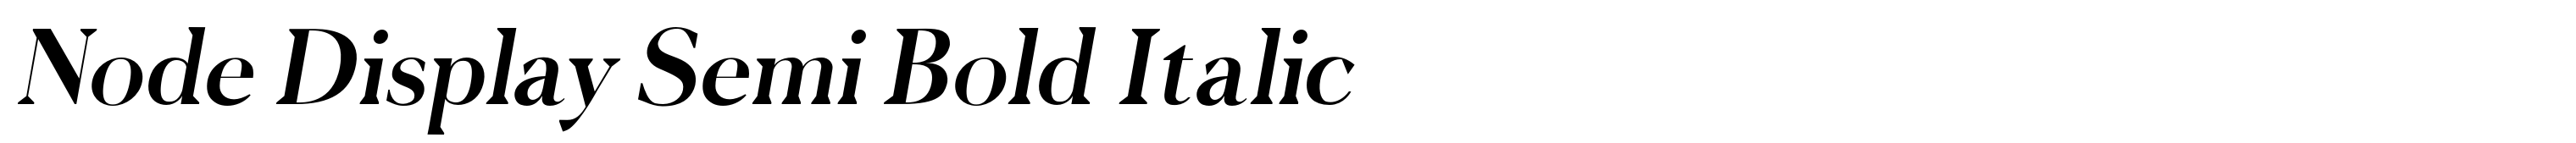 Node Display Semi Bold Italic